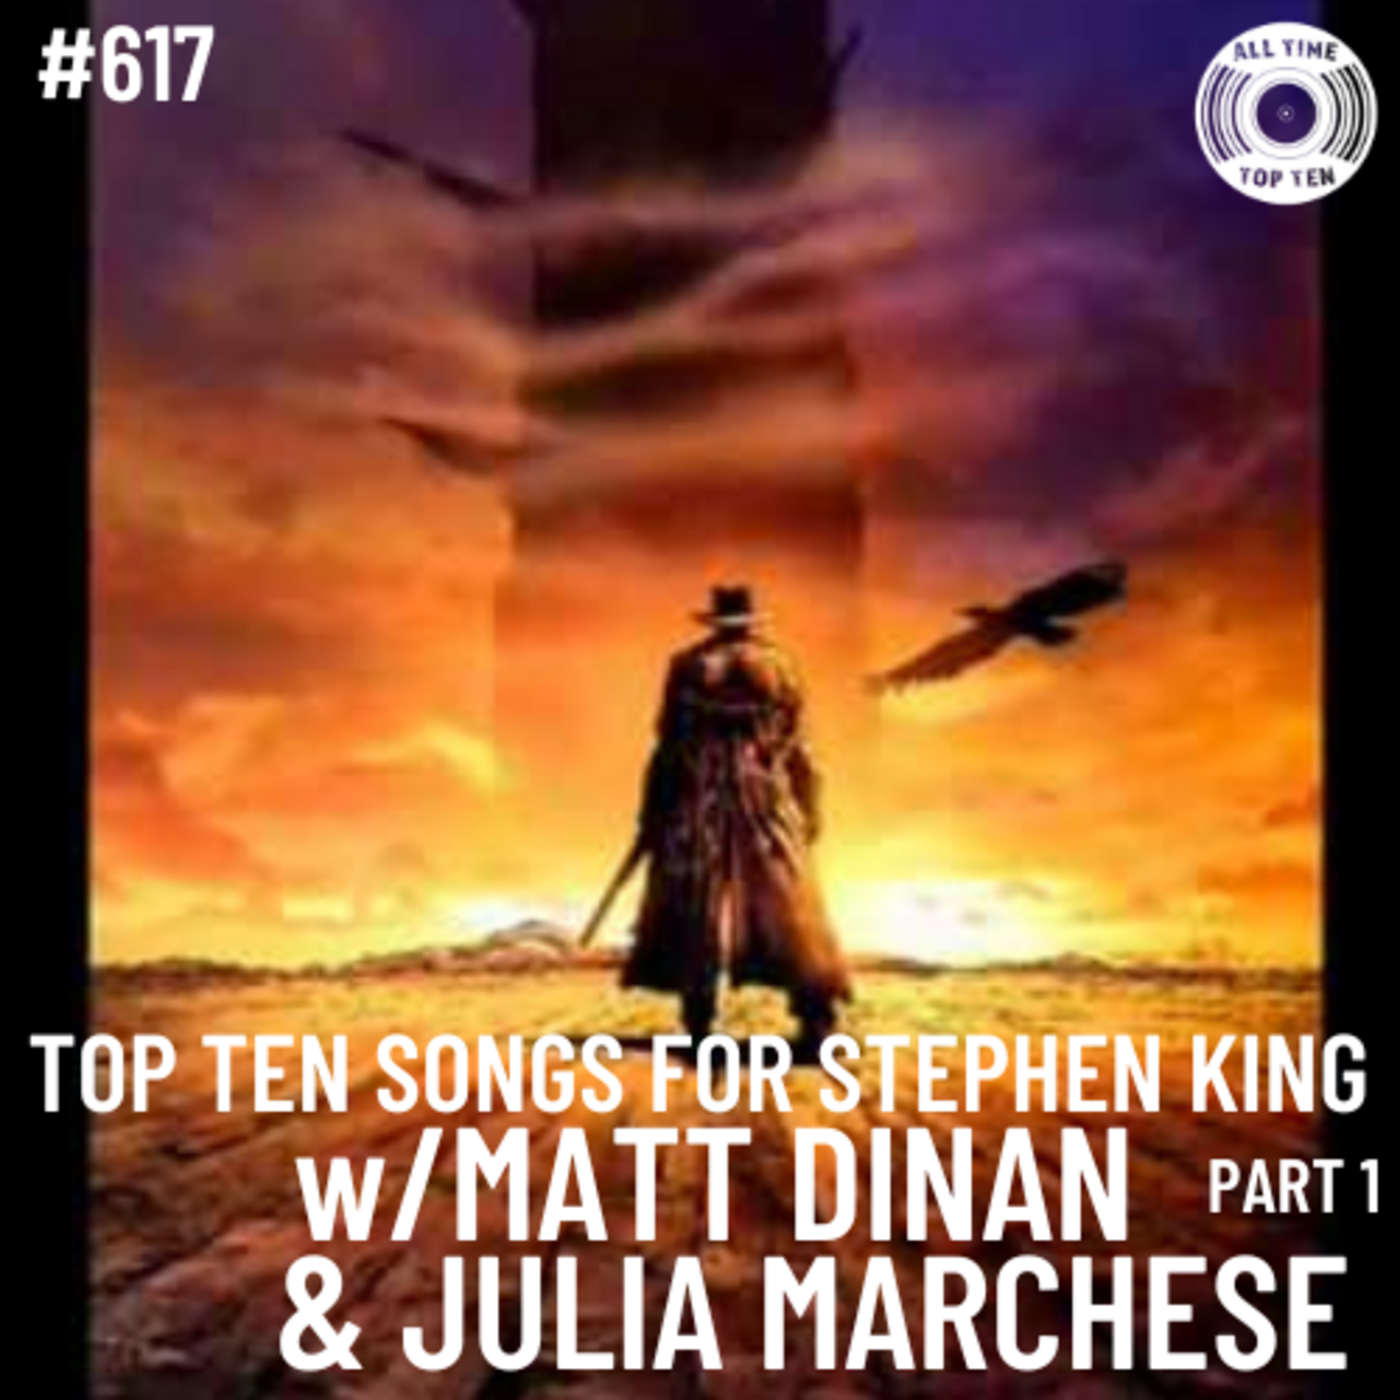 Episode 617 - Top Ten Songs For Stephen King Part 1 w/Matt Dinan & Julia Marchese